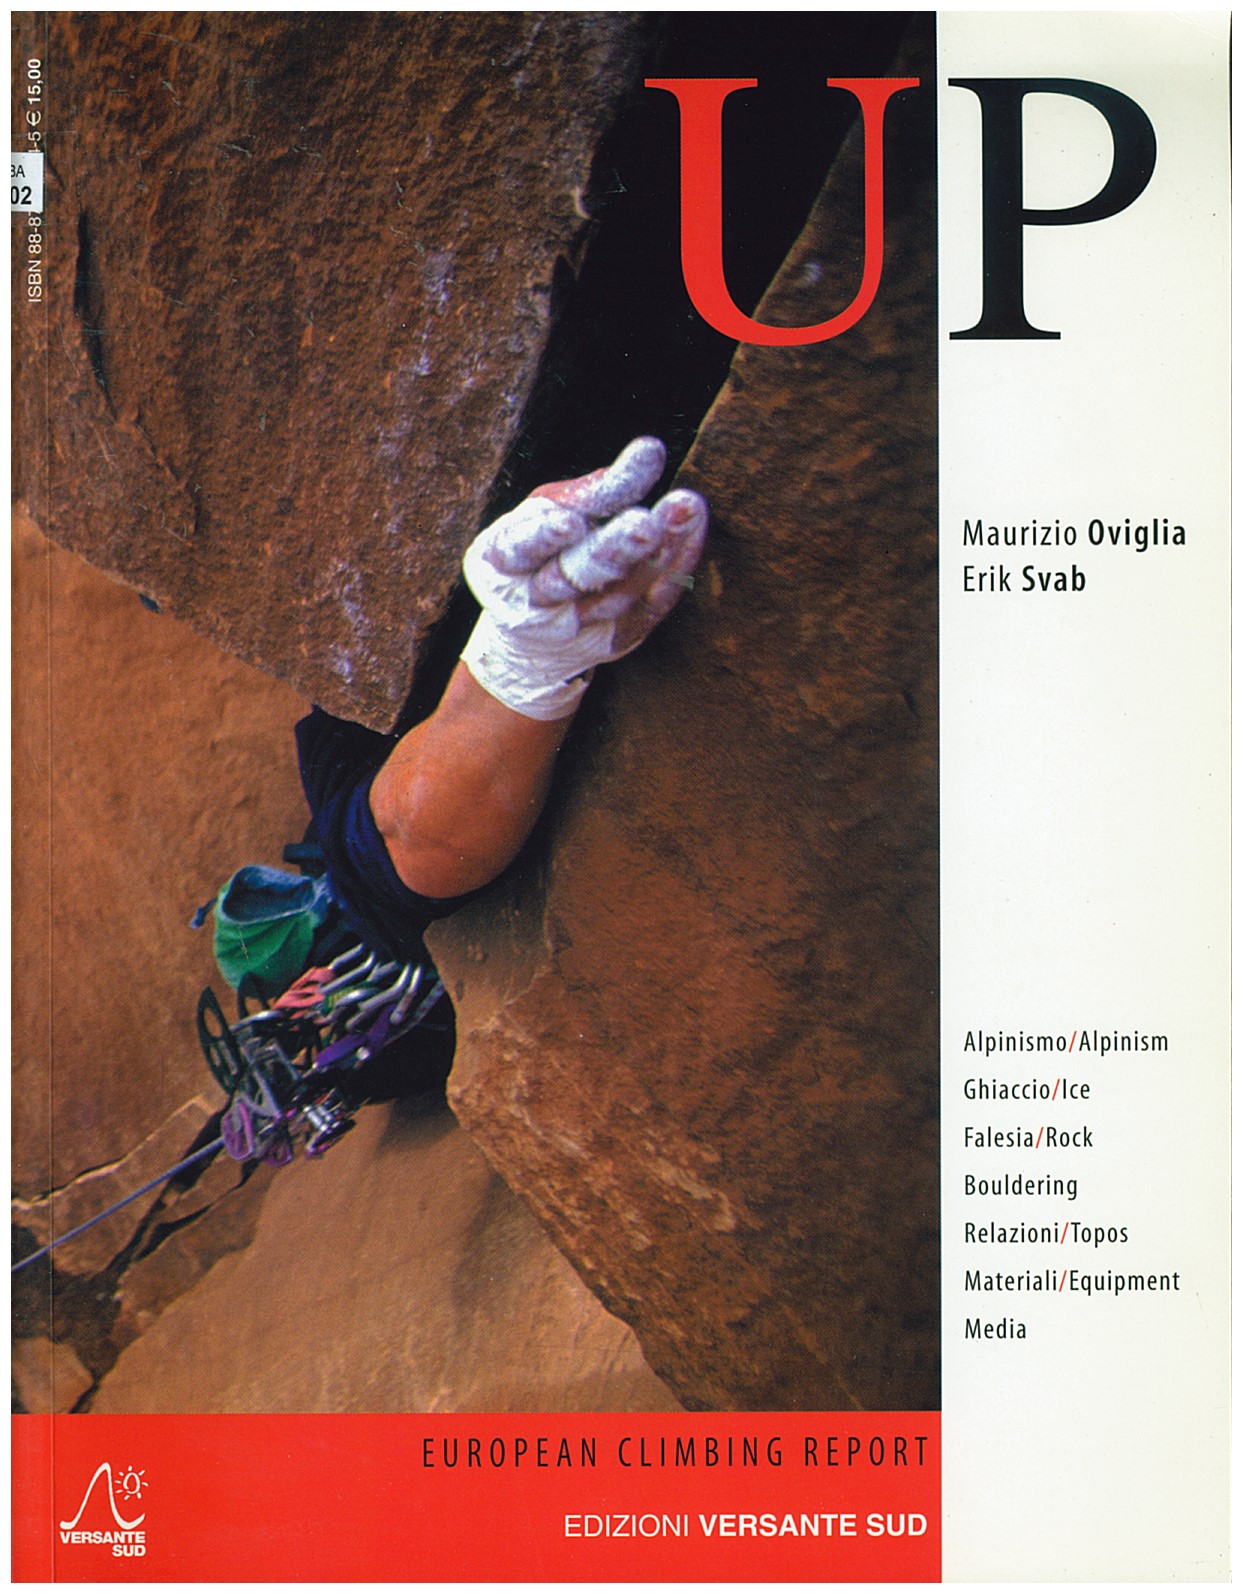 Copertina di European Climbing Repor (anno 2003)